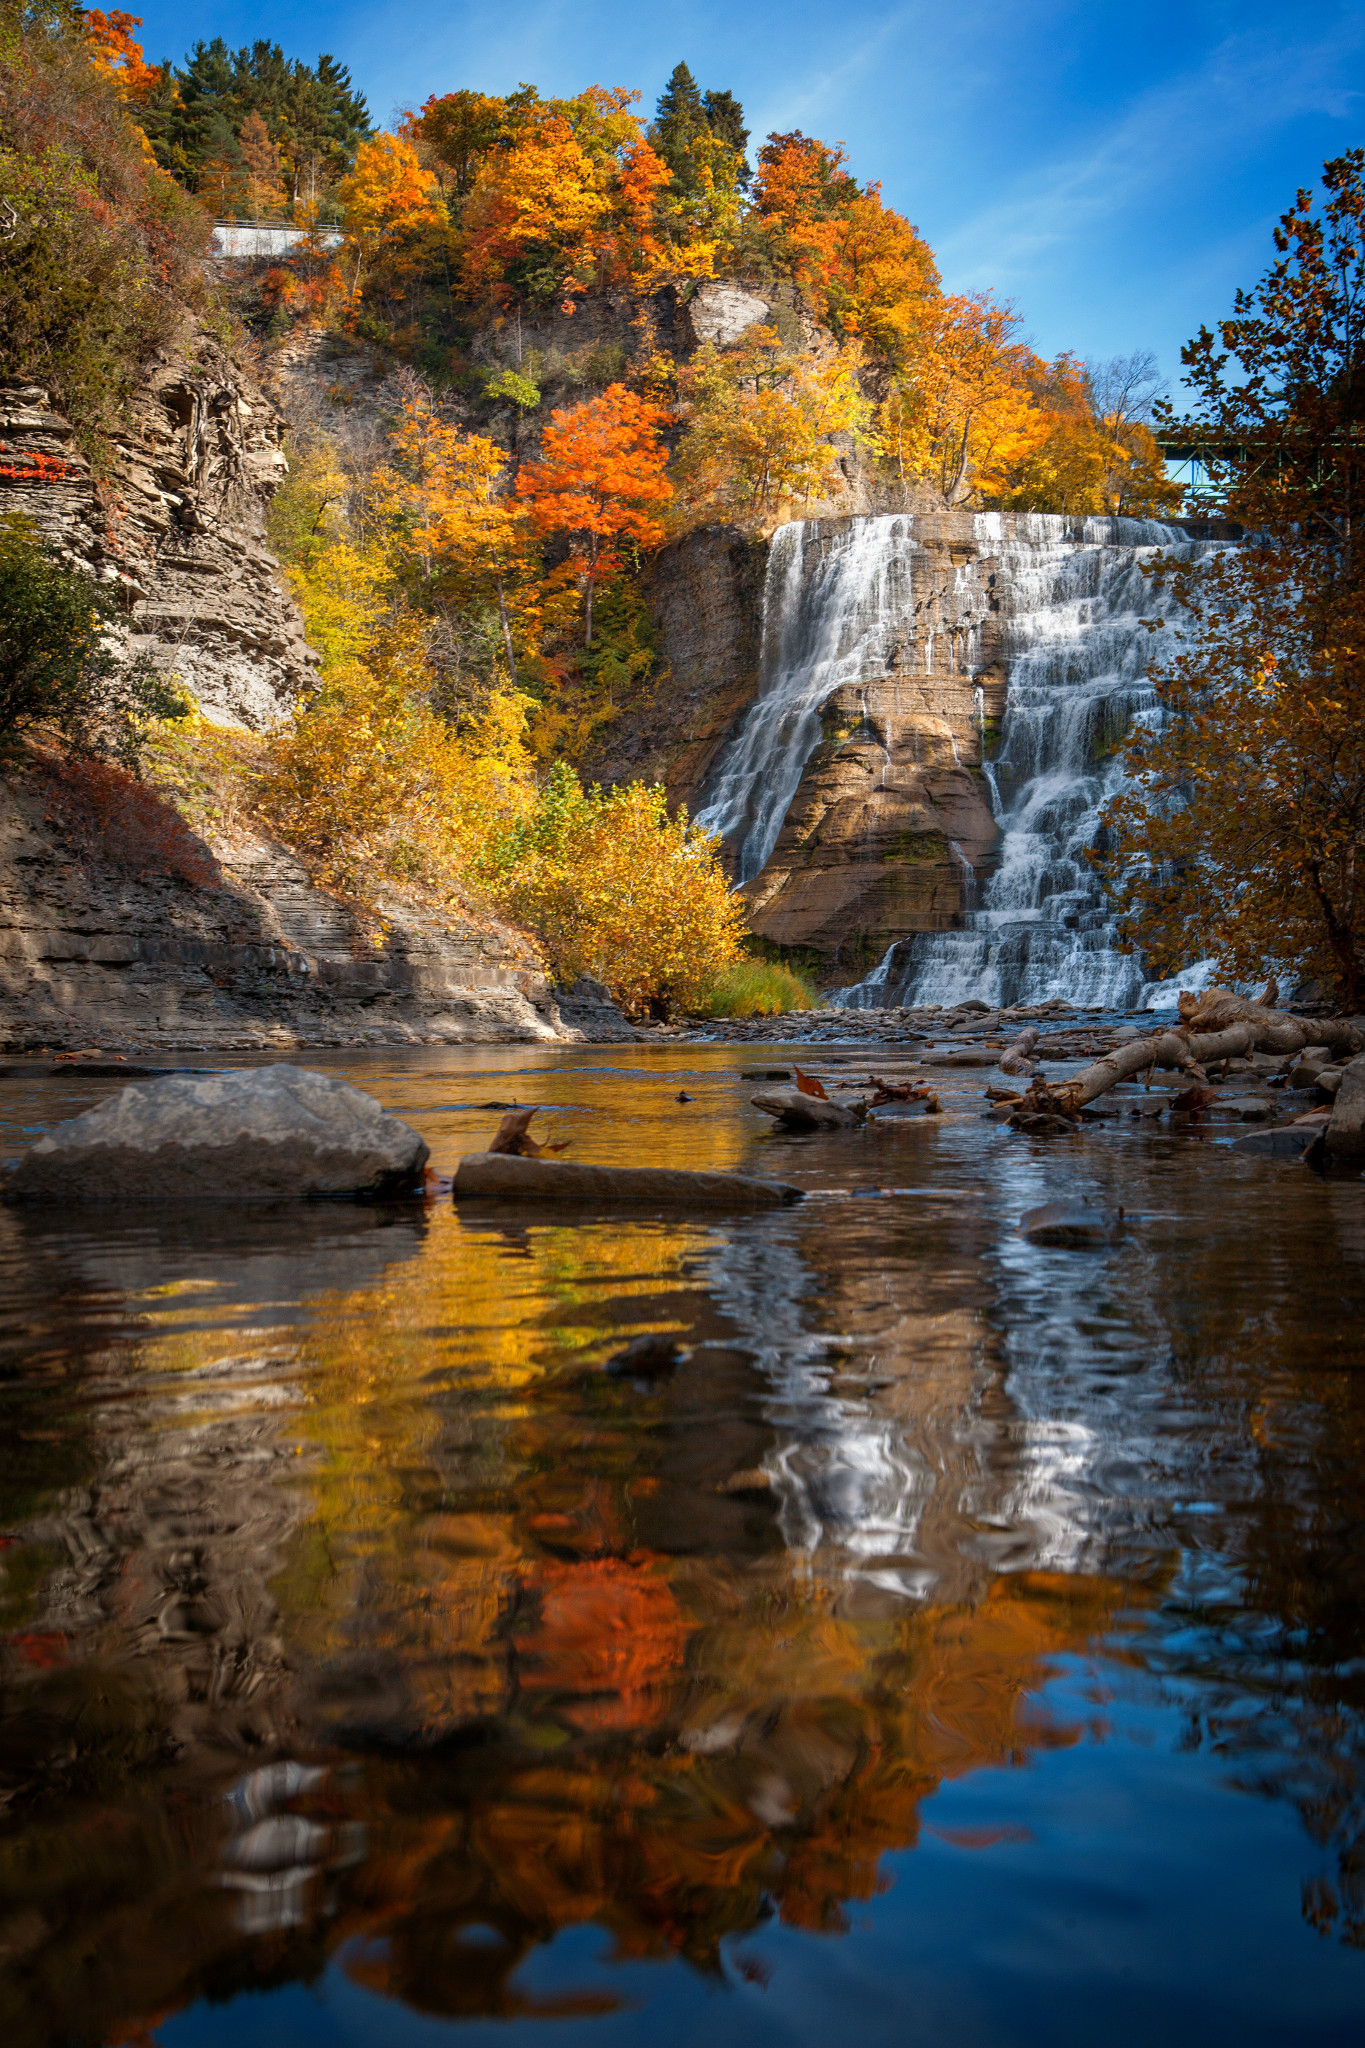 Ithaca Falls on Fall Creek in fall